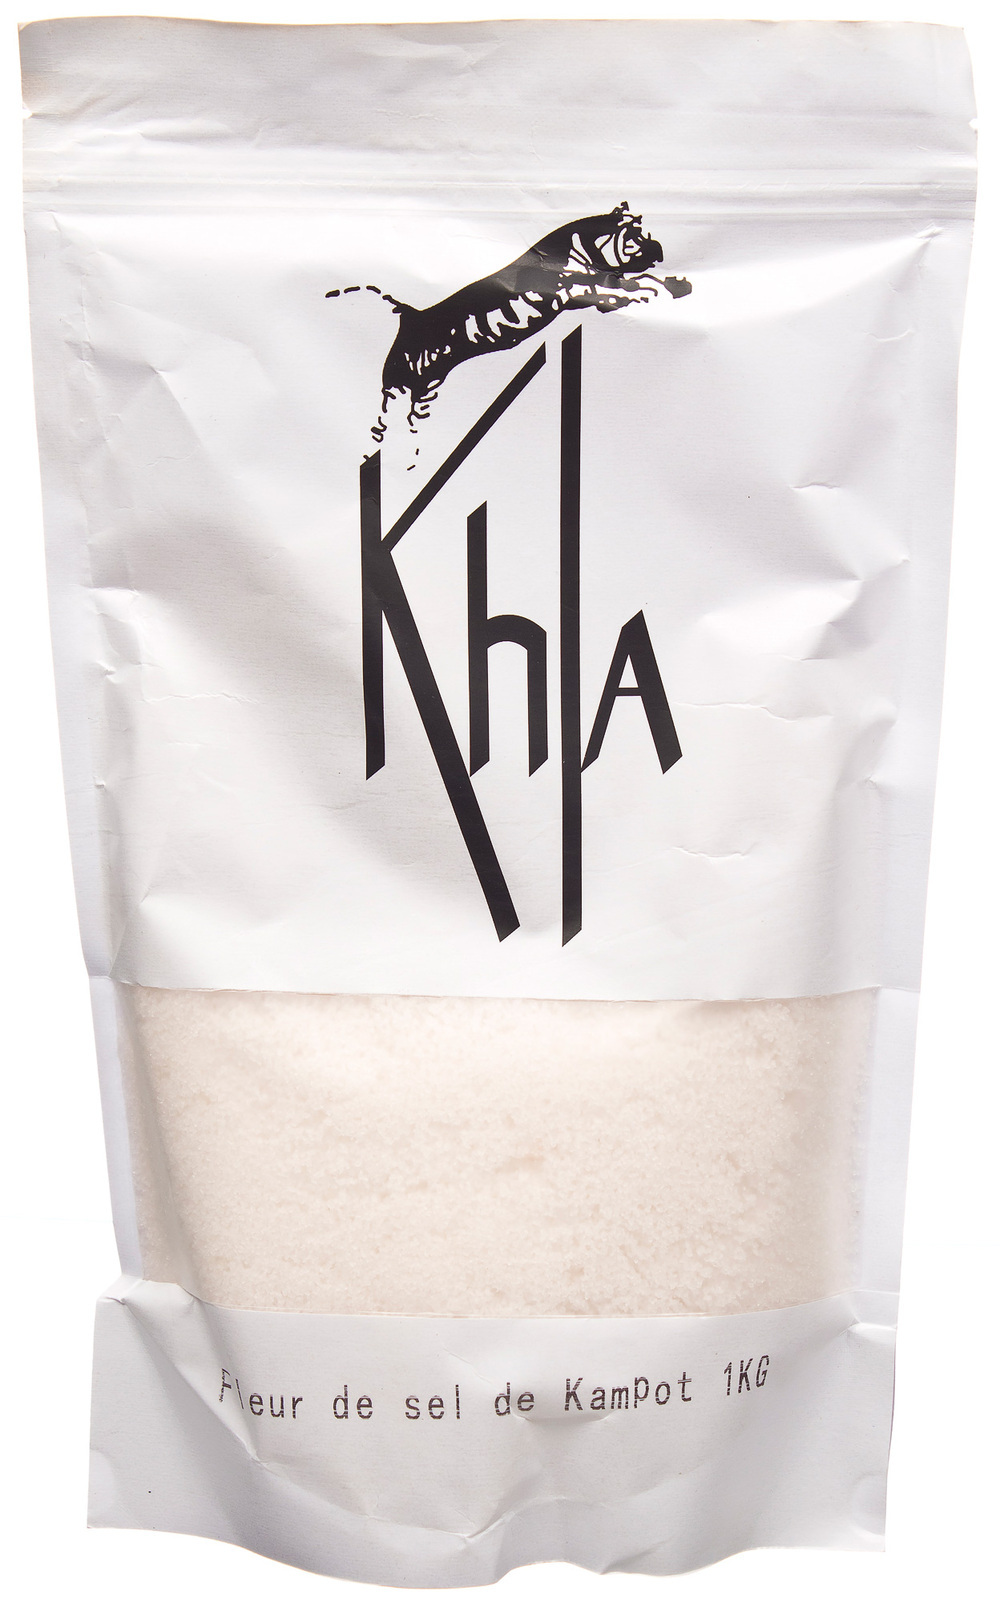 Khla - Fleur de sel de Kampot 1kg